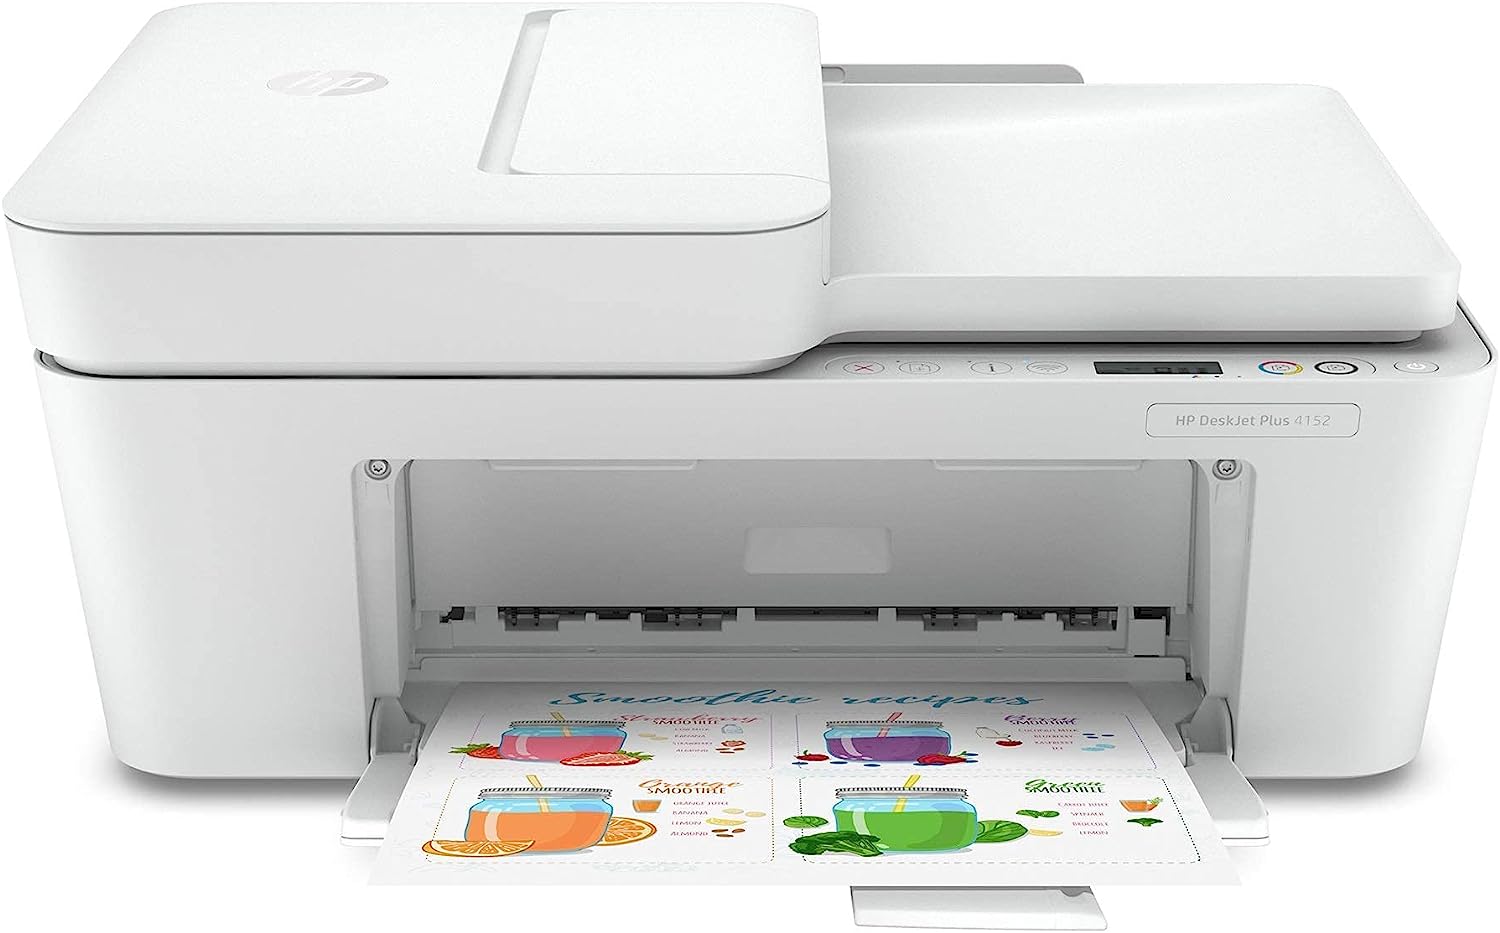 HP DeskJet Plus 4152 All-in-One Color Inkjet Printer, [...]